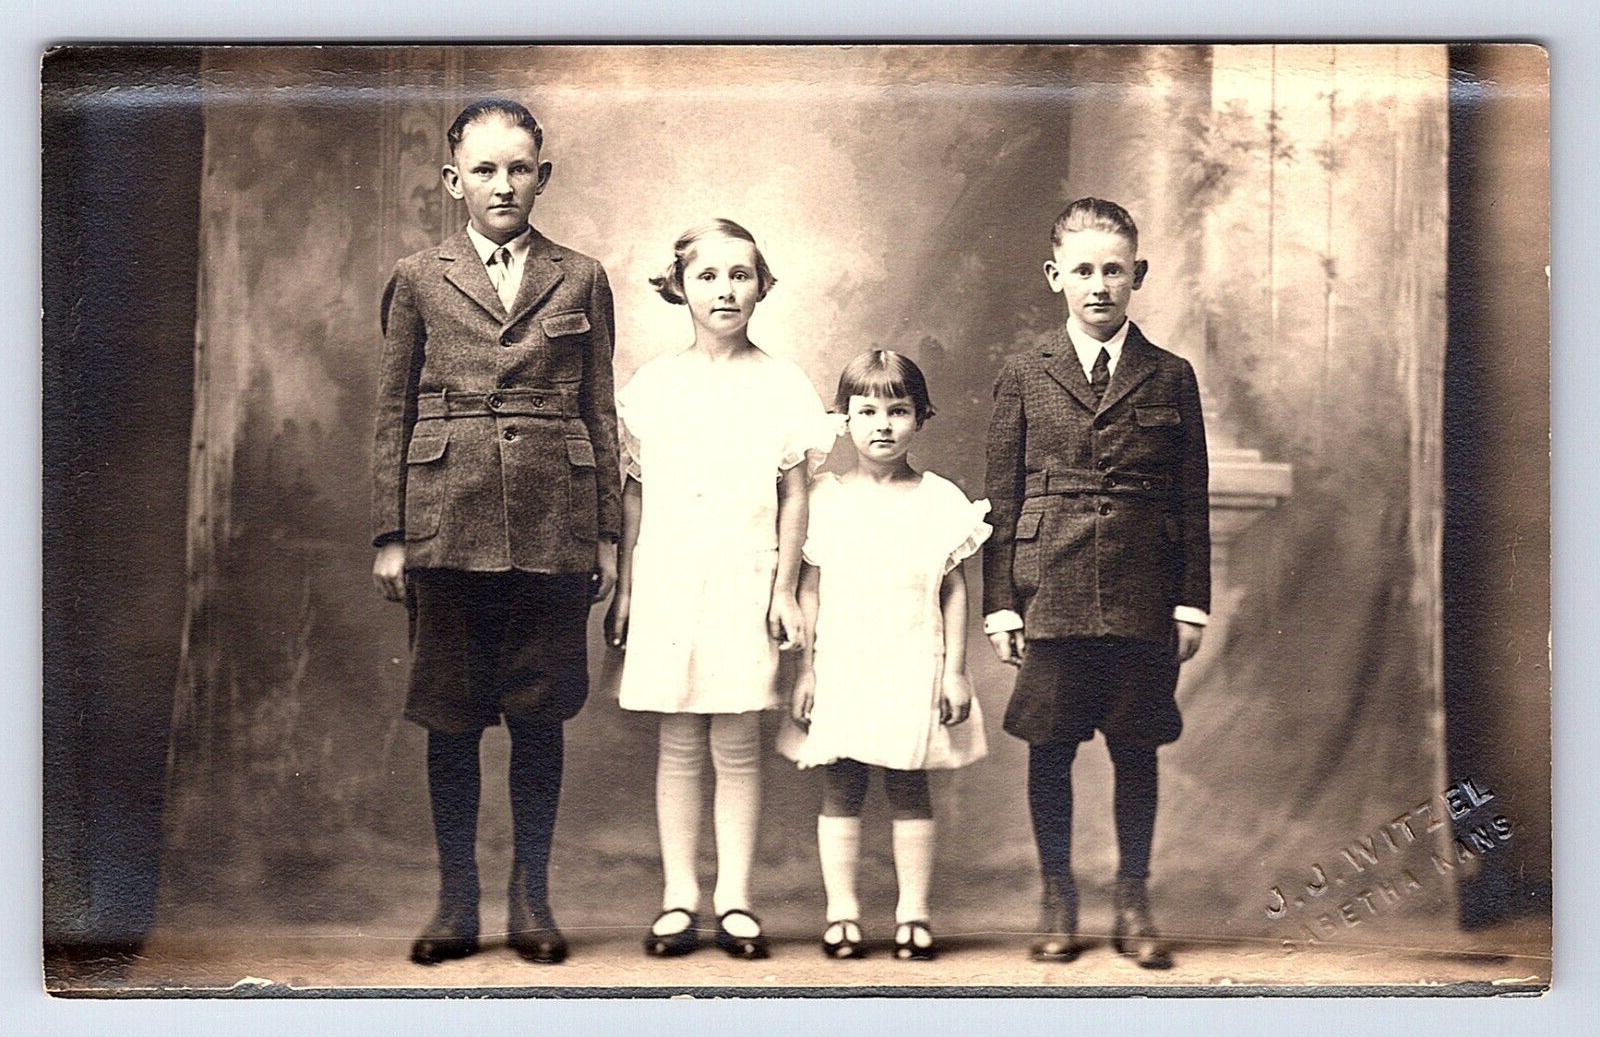 Postcard RPPC Four Children Posed, Marked as Sabetha, Kansas Photographer